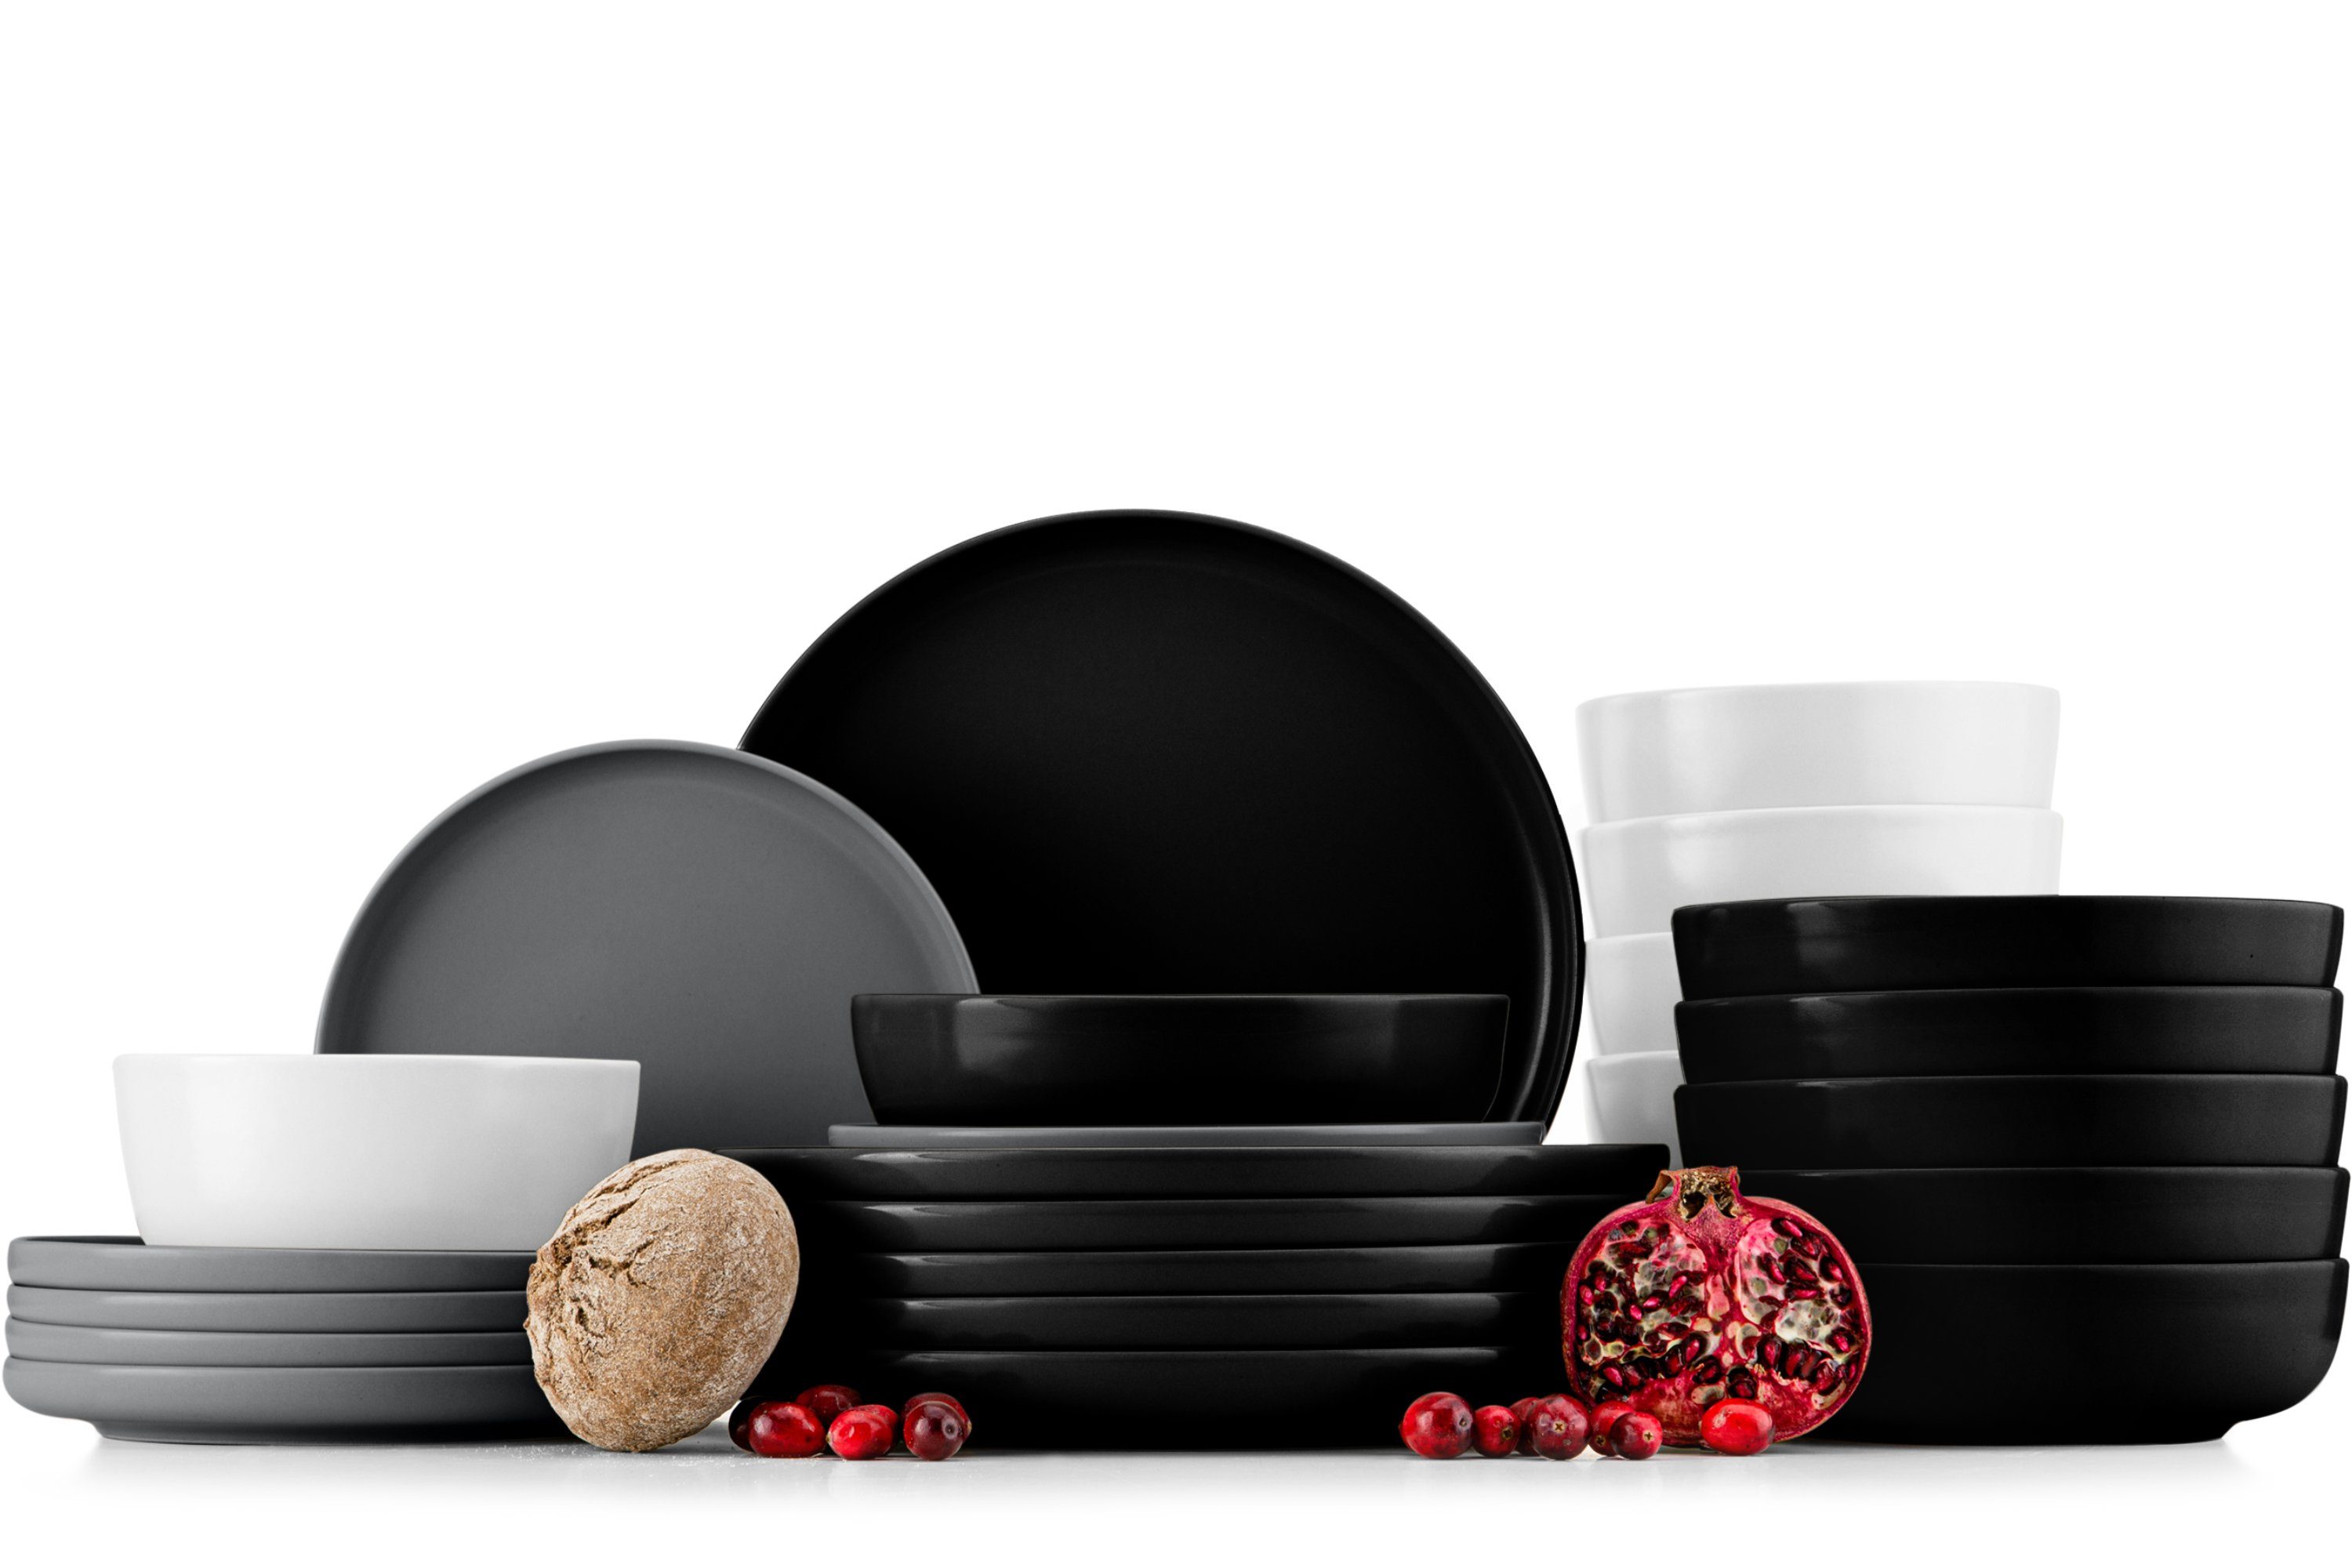 Konsimo Kombiservice VICTO Geschirrset hergestellt in der EU (24-tlg), 6 Personen, Steingut, spülmaschinengeeignet, mikrowellengeeignet, mehrfarbig, matt matt schwarz/grau/weiß/schwarz